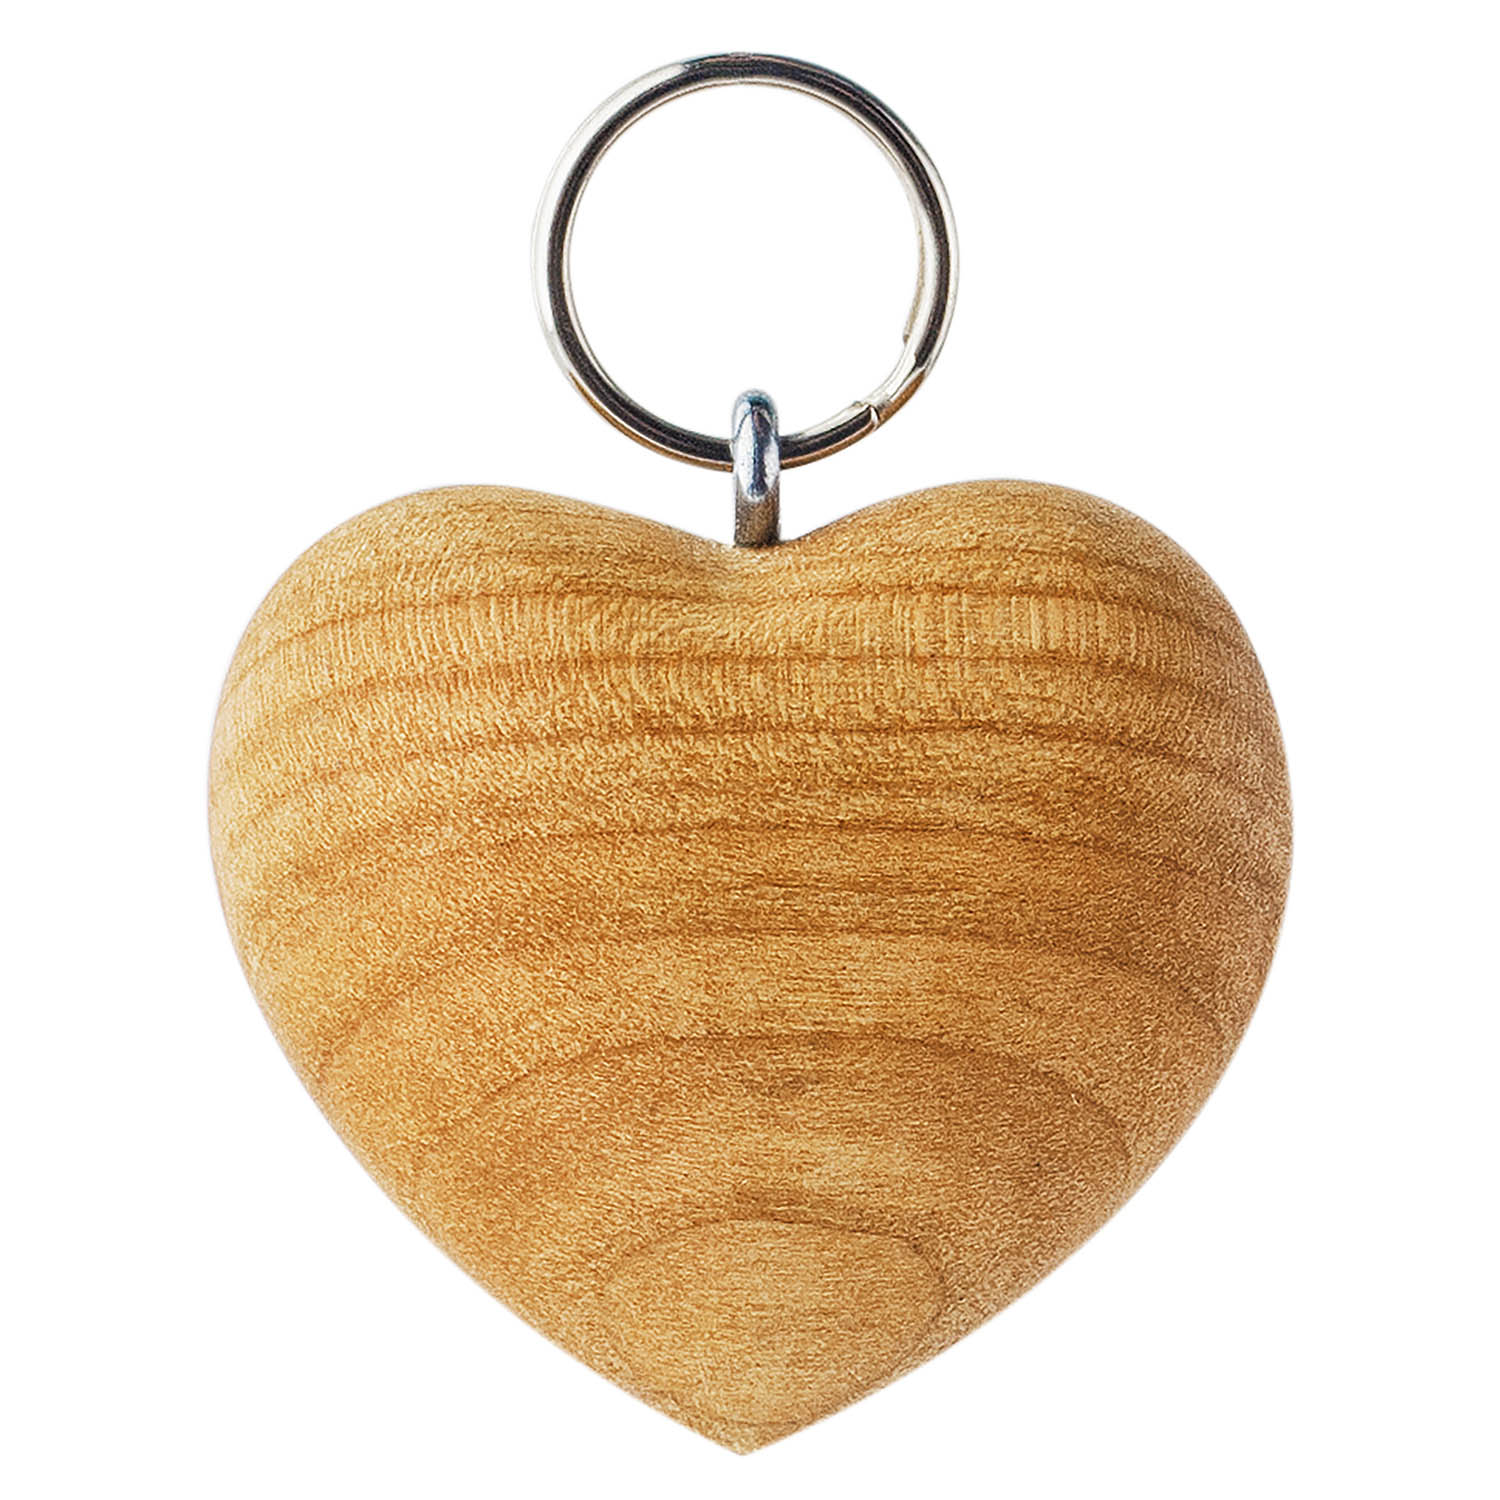 Wooden Heart Keychain & Wooden Owl Keychain